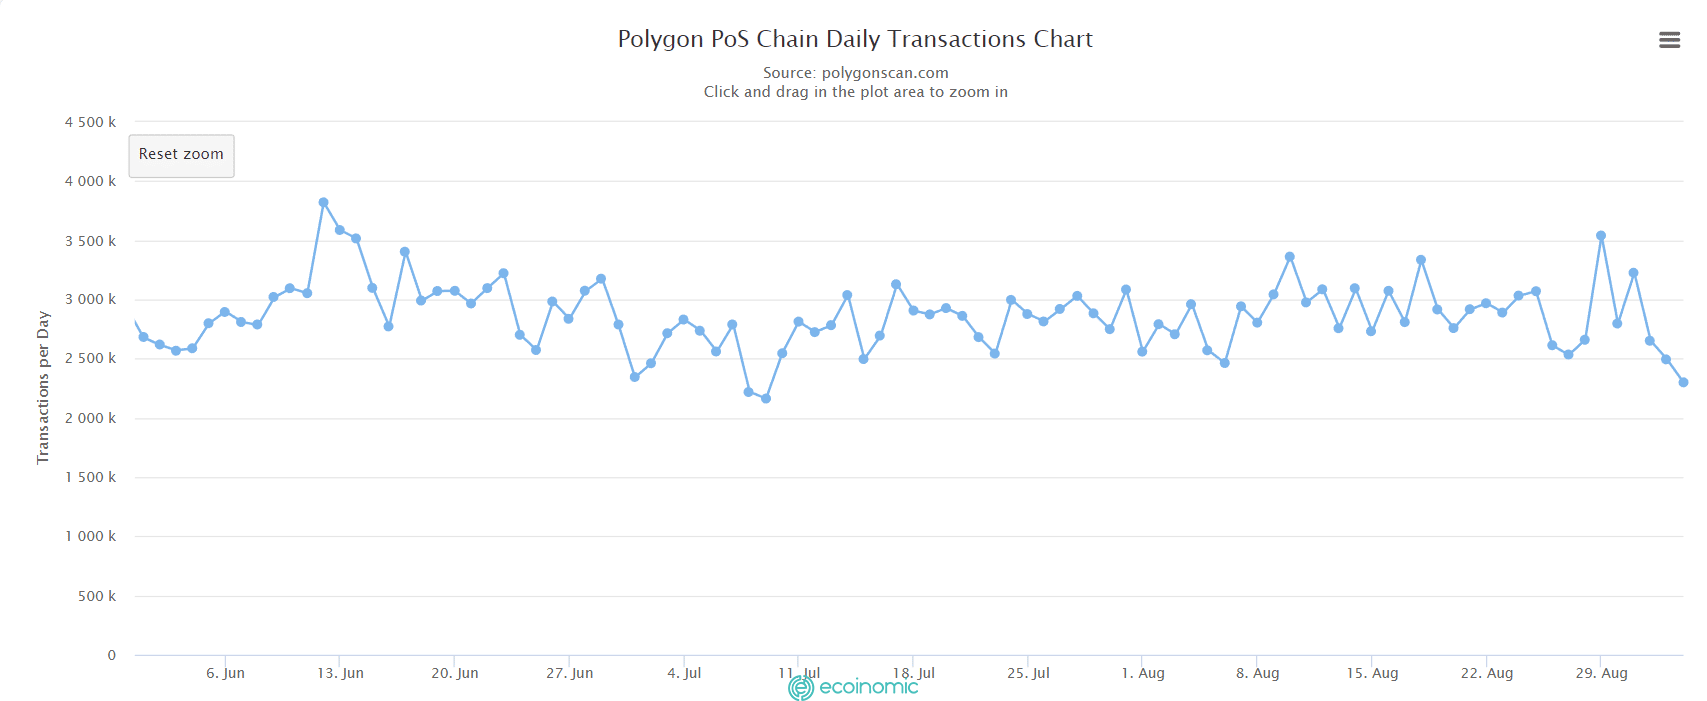 Khối lượng giao dịch hằng ngày của Polygon PoS